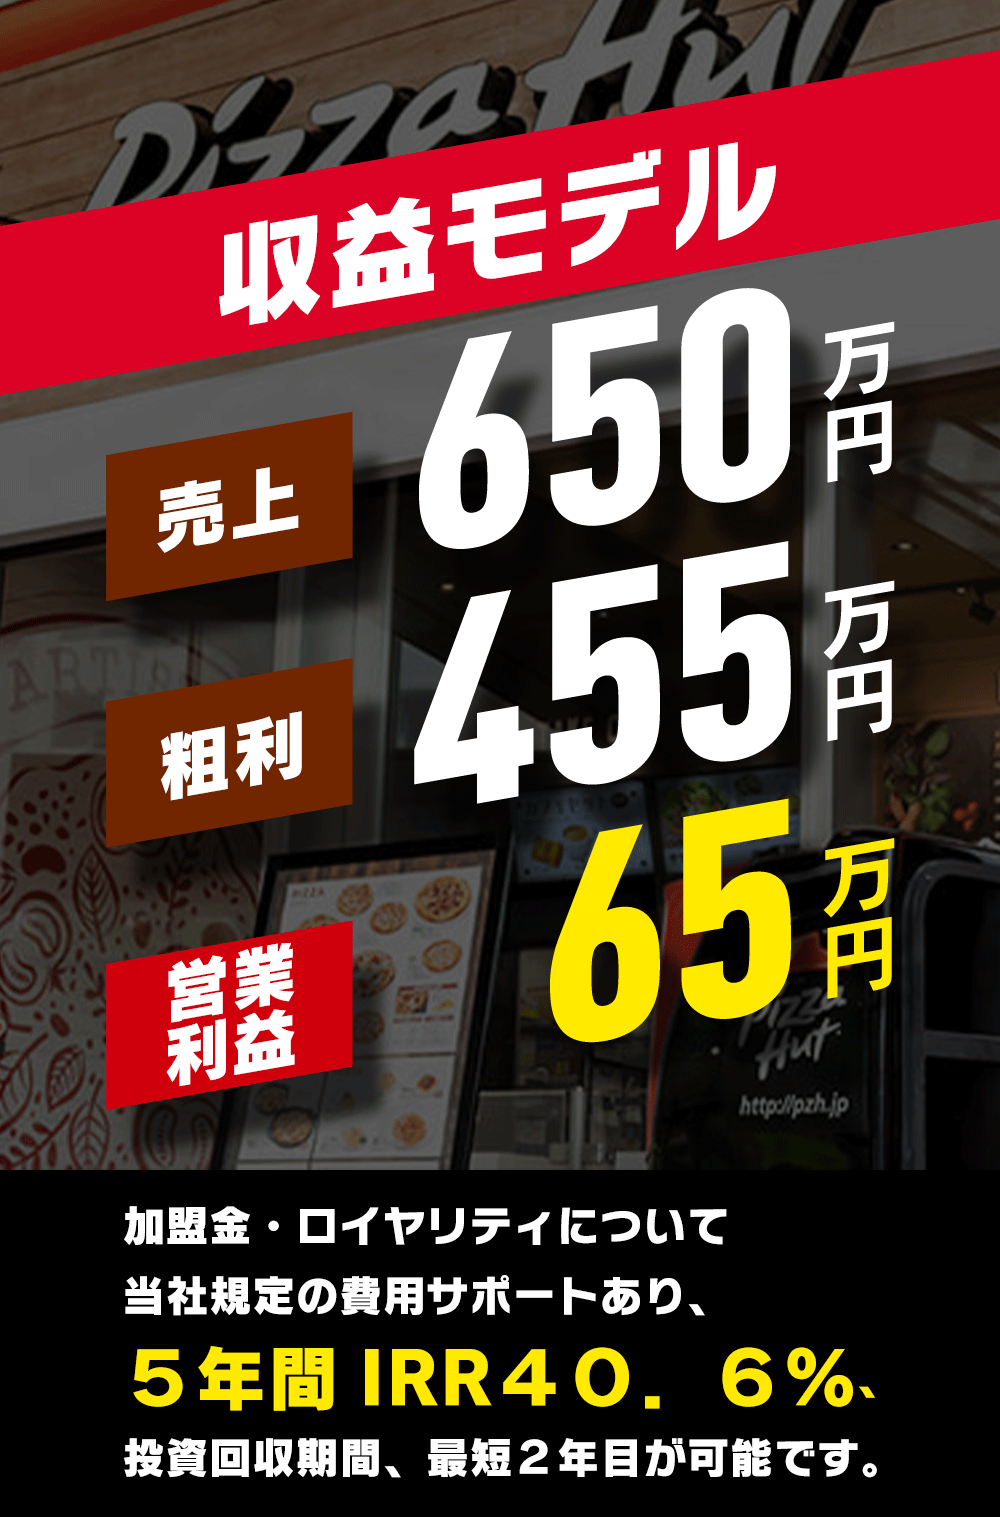 ピザハットのフランチャイズの収益モデルは月間で売上650万円、粗利455万円、営業利益で65万円。5年間IRR40.6%